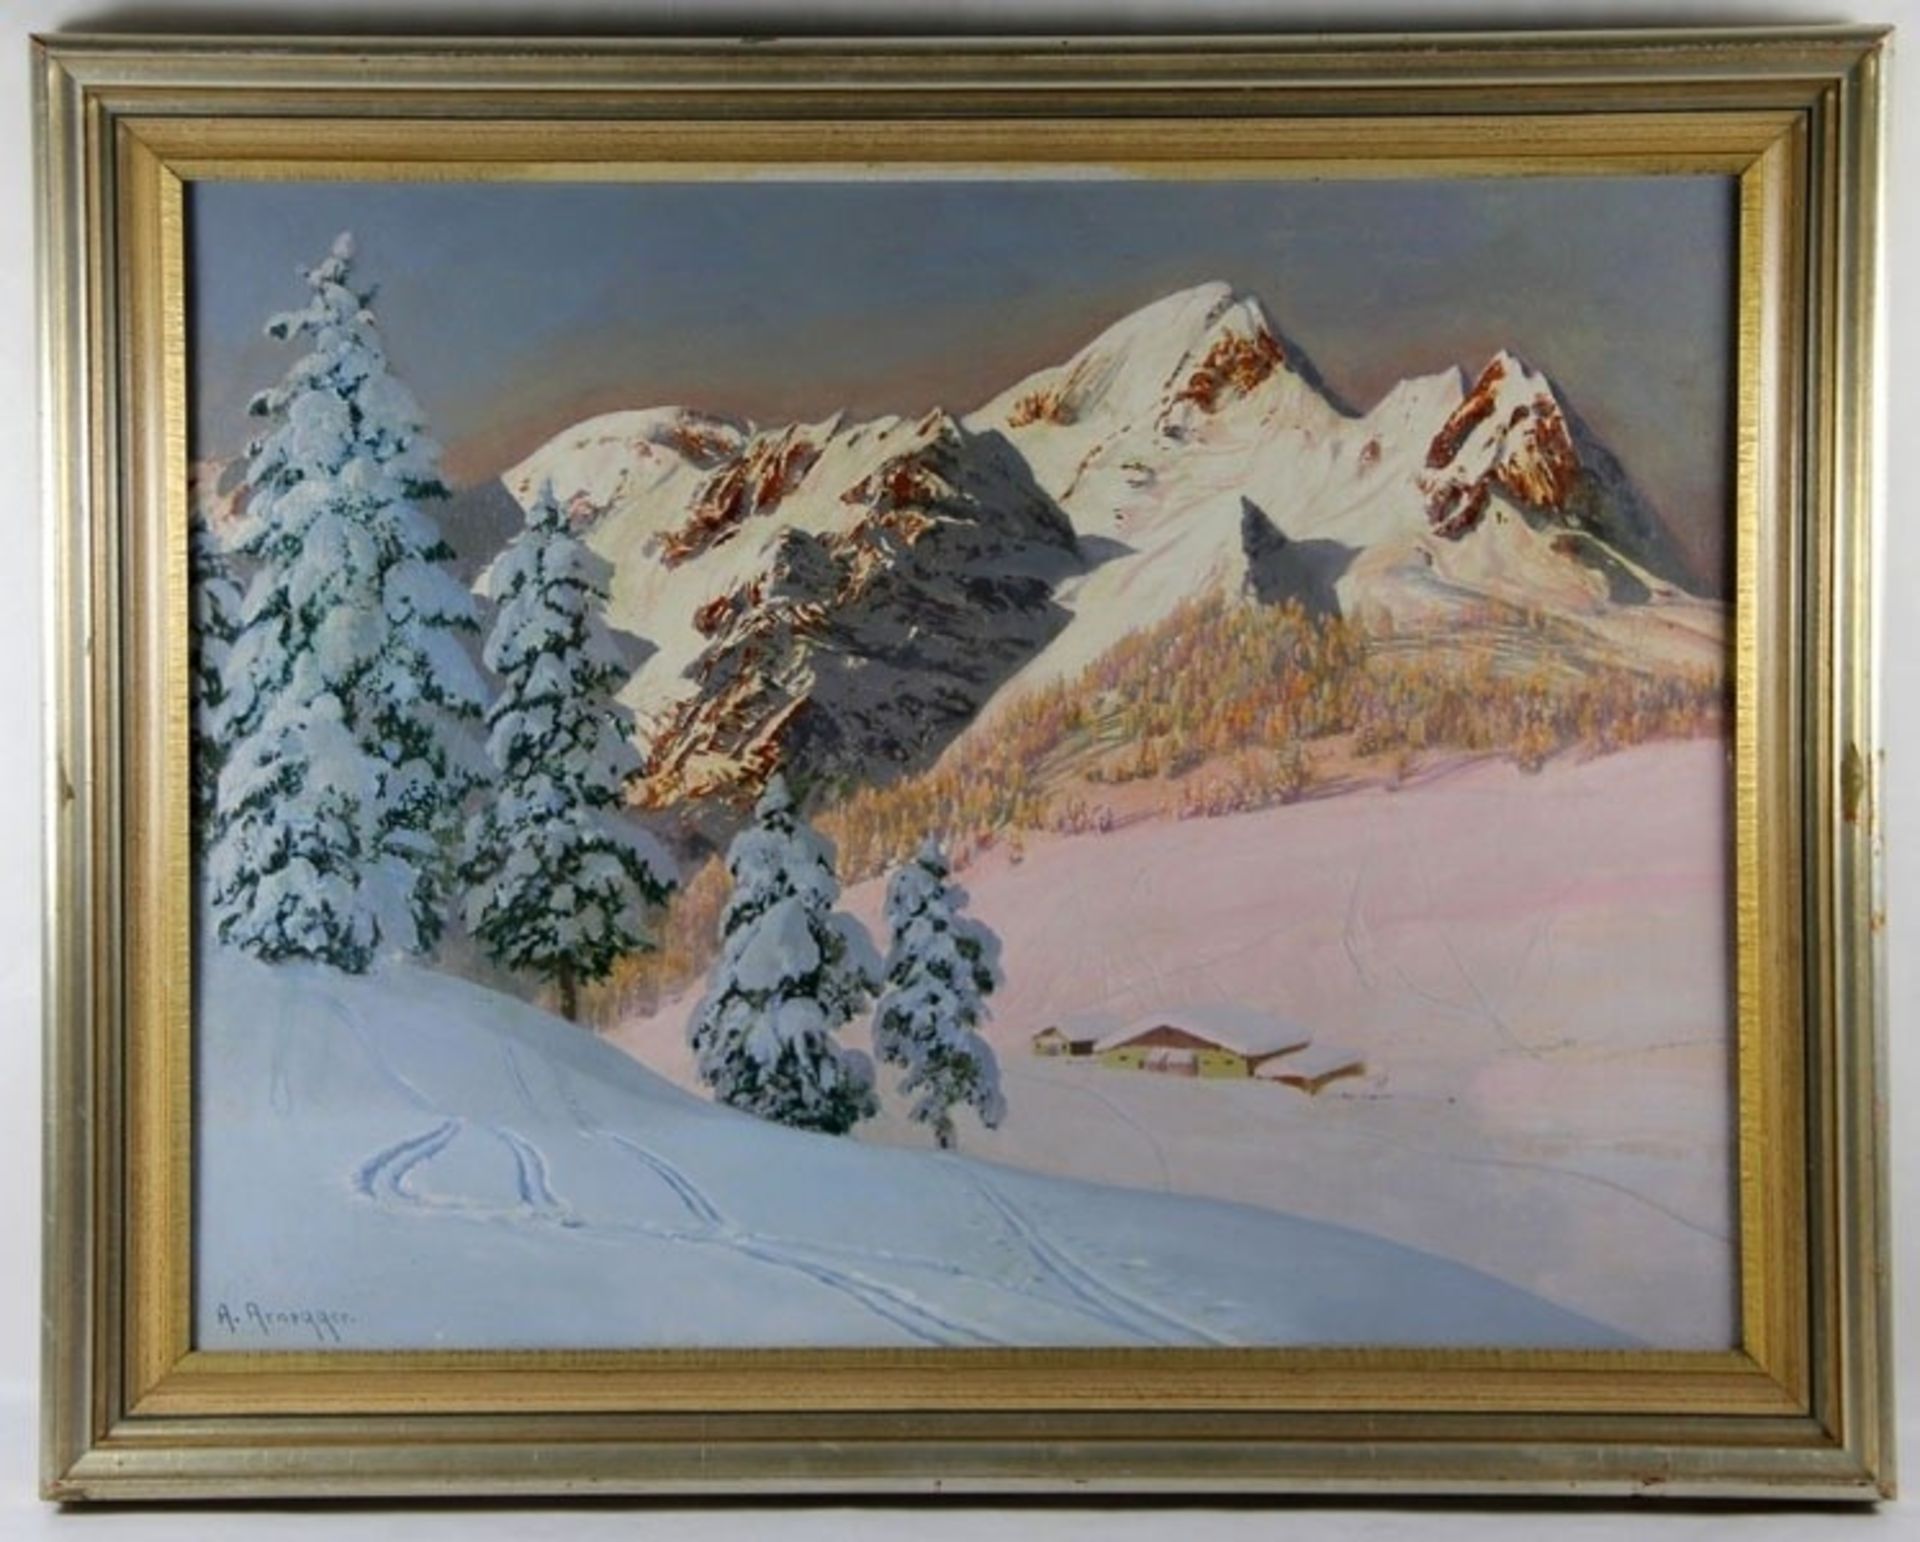 Arnegger, Alois1879-1963, Alpenglühen in tief verschneitem Gebirge, weite Schneefelder u. Ge